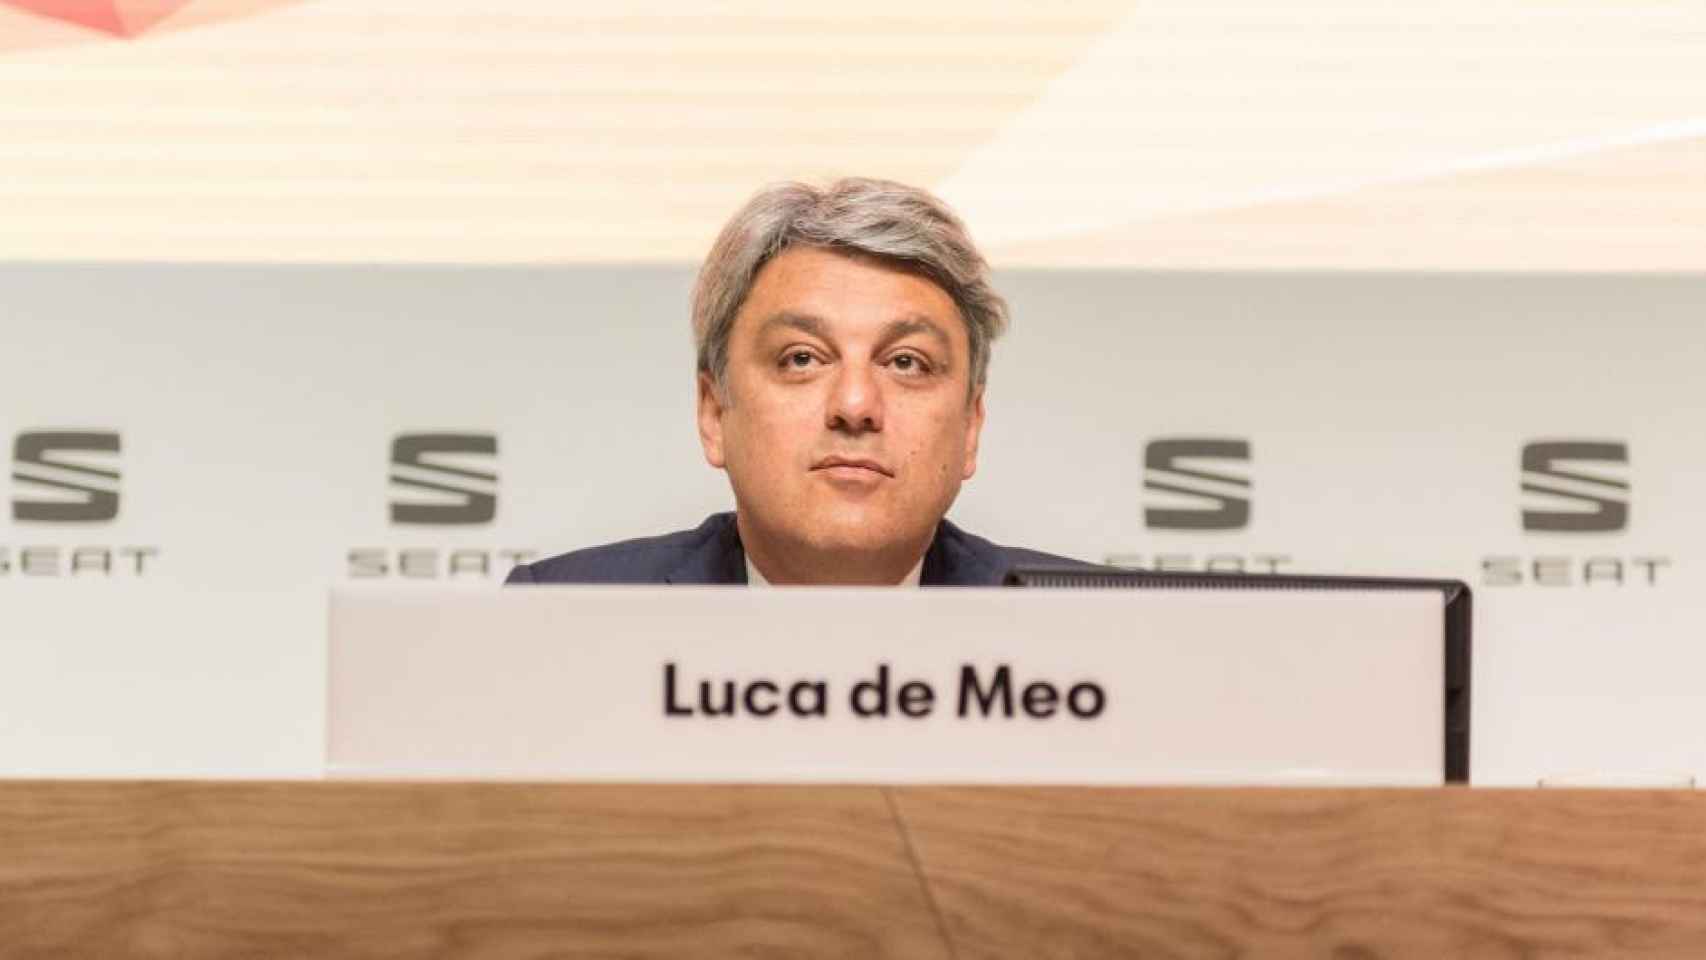 Luca de Meo, ya expresidente de Seat, en una imagen de archivo / COCHE GLOBAL